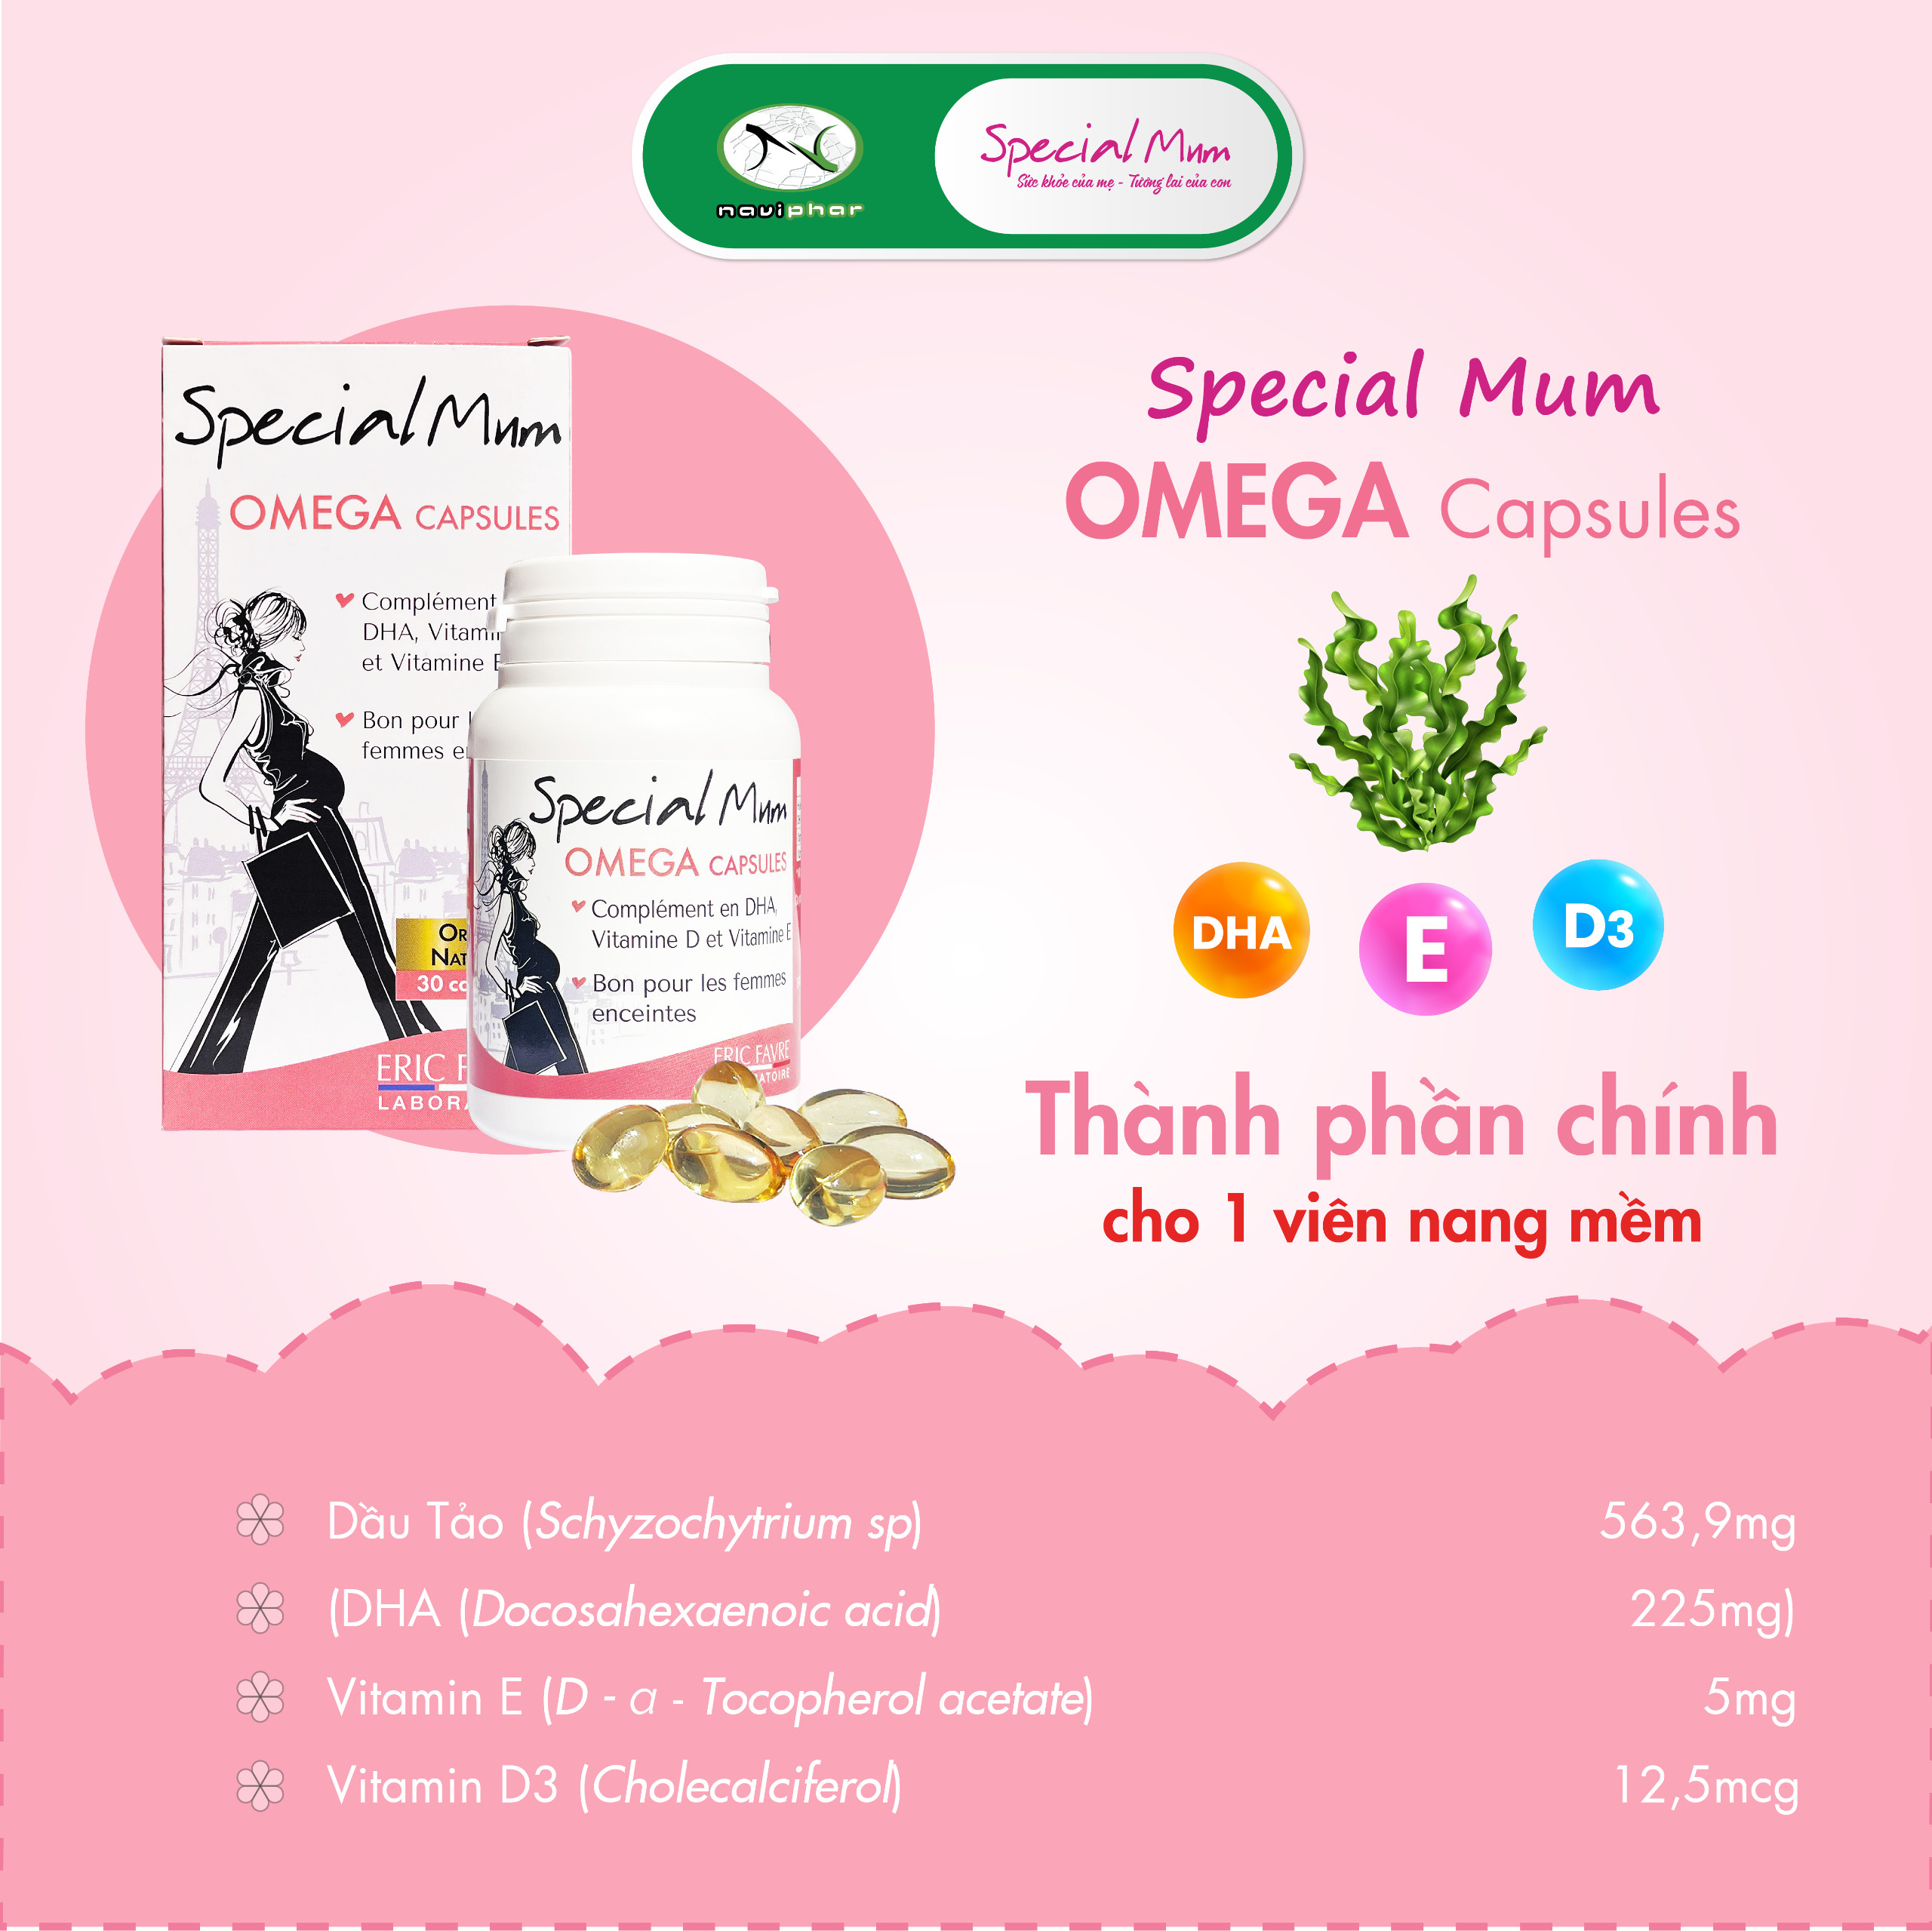 TPBVSK Special Mum Omega Capsules - DHA chiết xuất thực vật [Nhập khẩu Pháp]